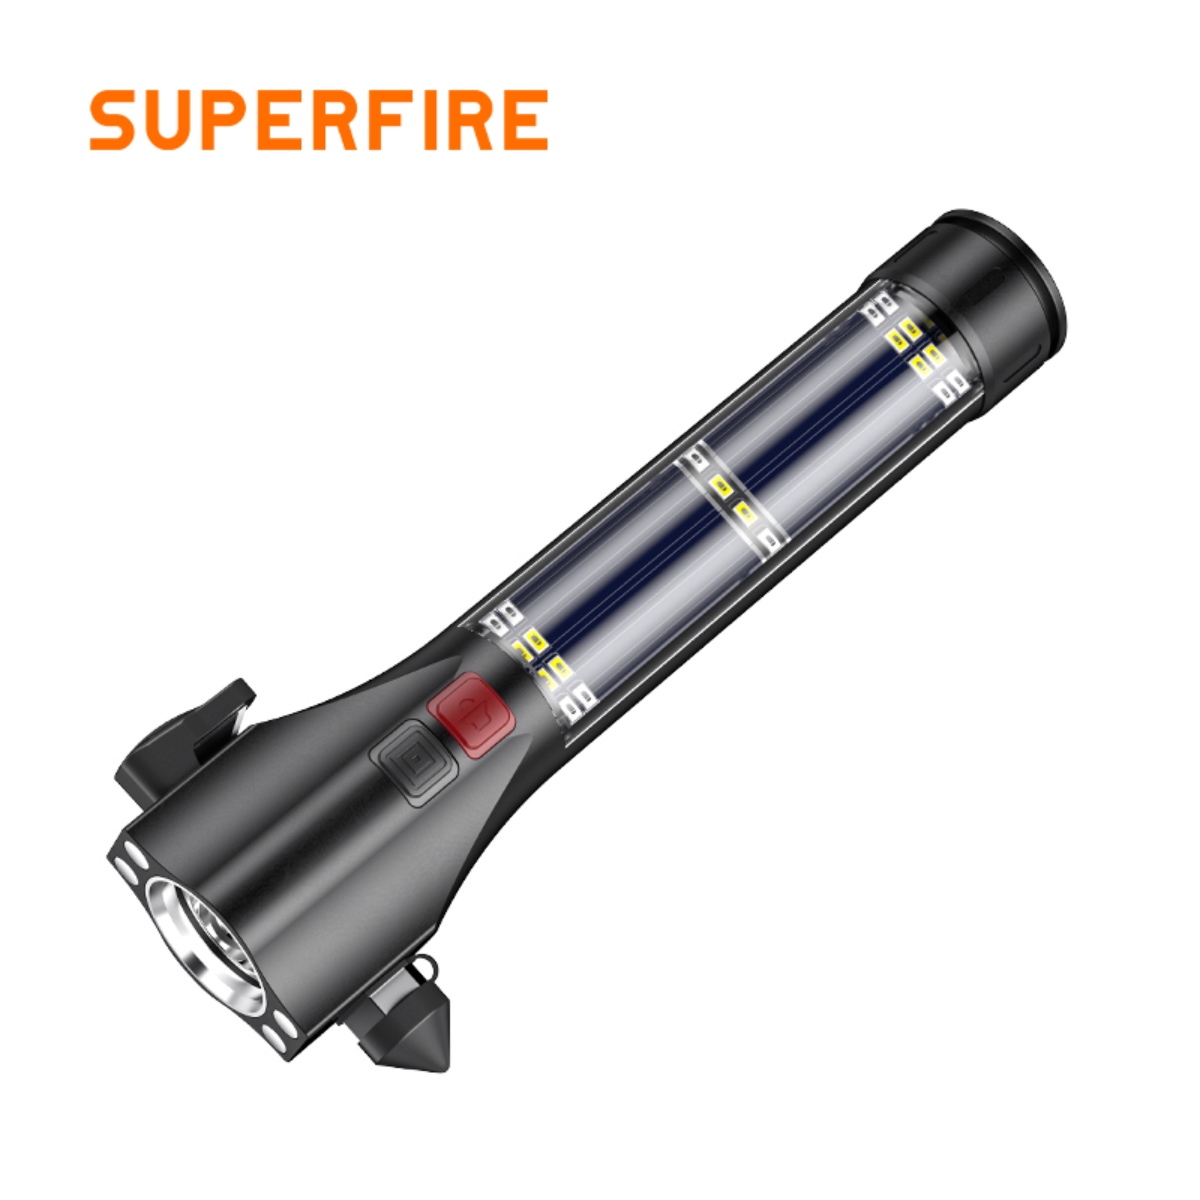 SUPERFIRE D30 solar multifunction flashlights